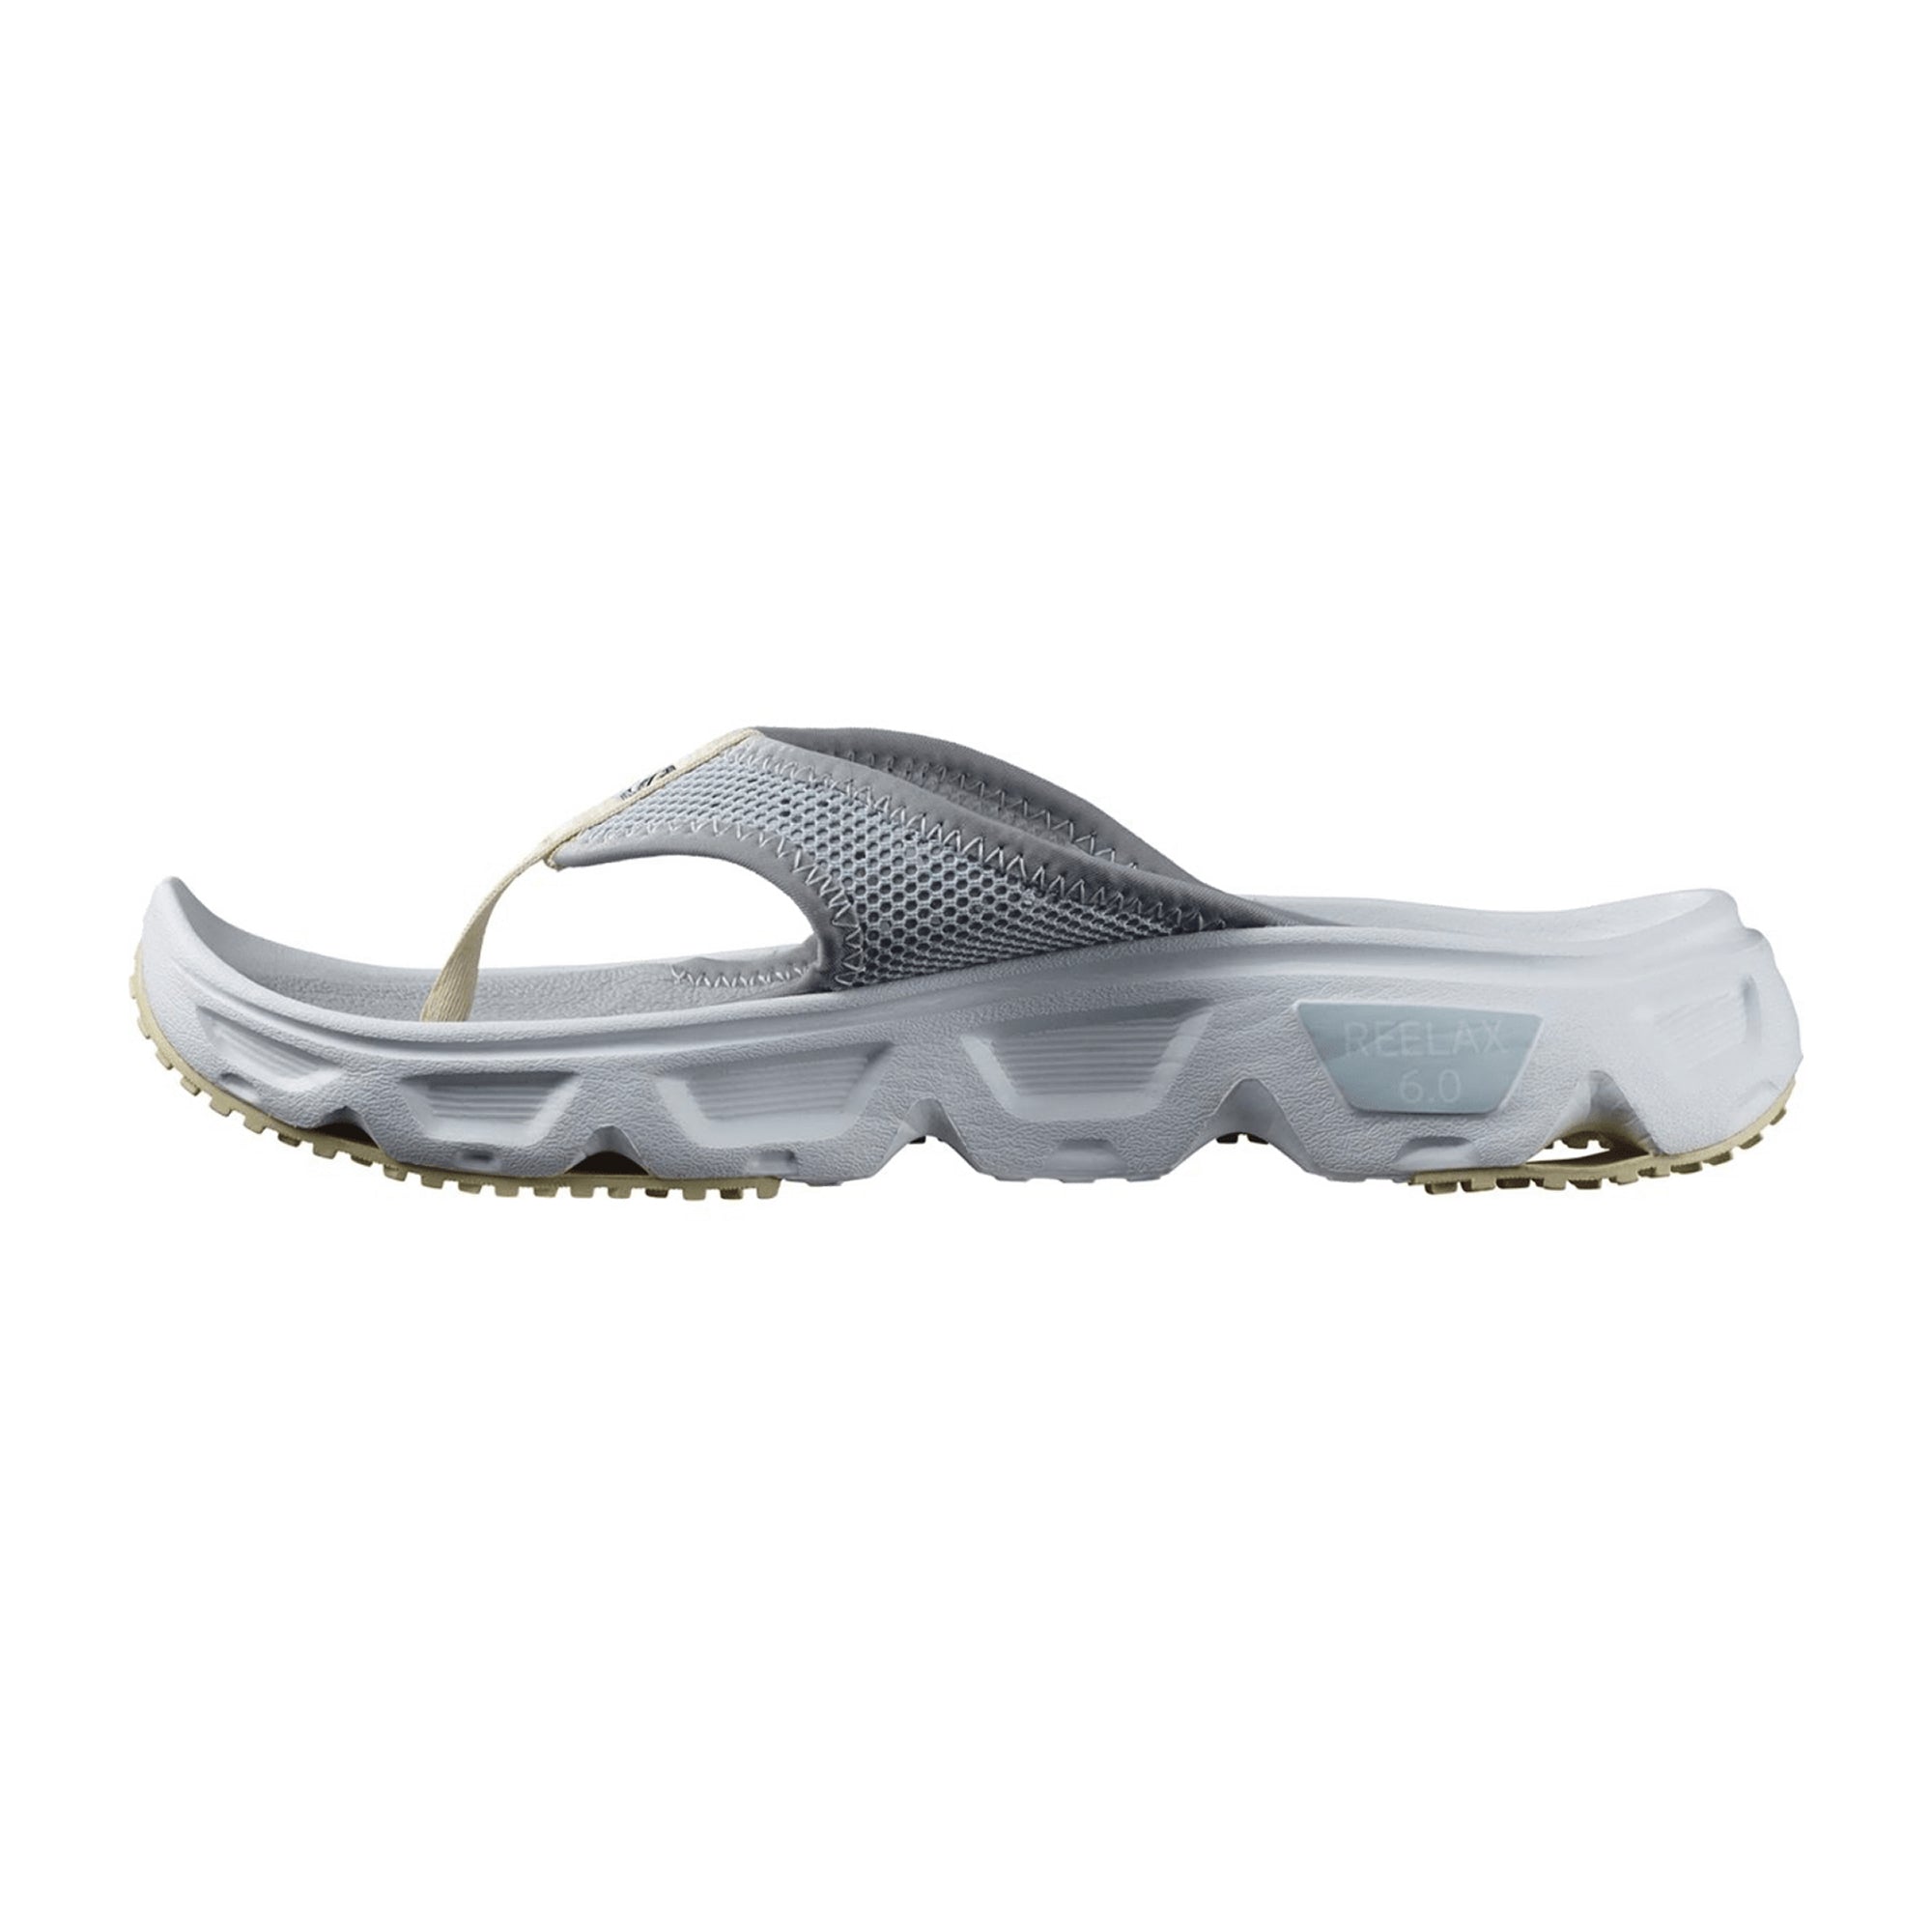 Salomon shoes REELAX BREAK 6.0 W Blac for women, gray